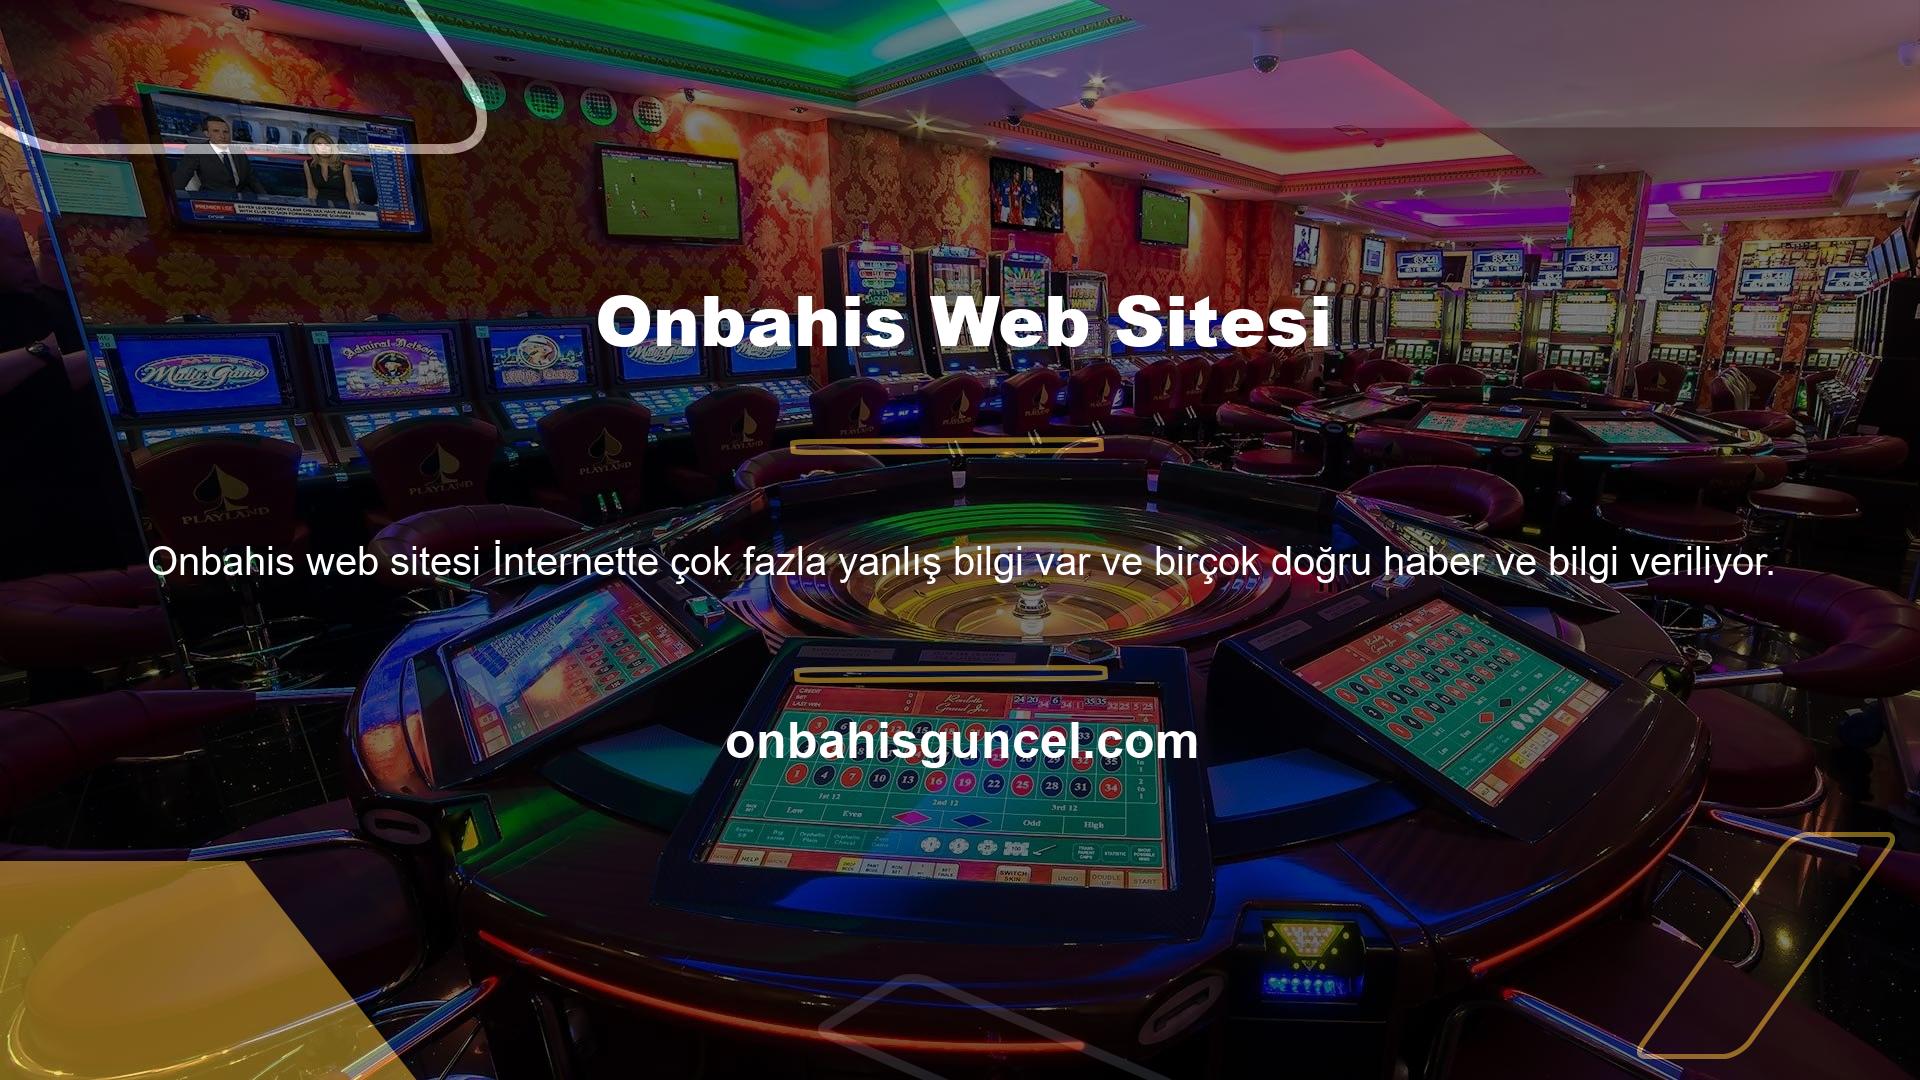 Çevrimiçi bahis ve canlı casinolar sitesi Onbahis, lisanslı bir şirkettir ve bu tür şikayetleri işleme koyan site değildir